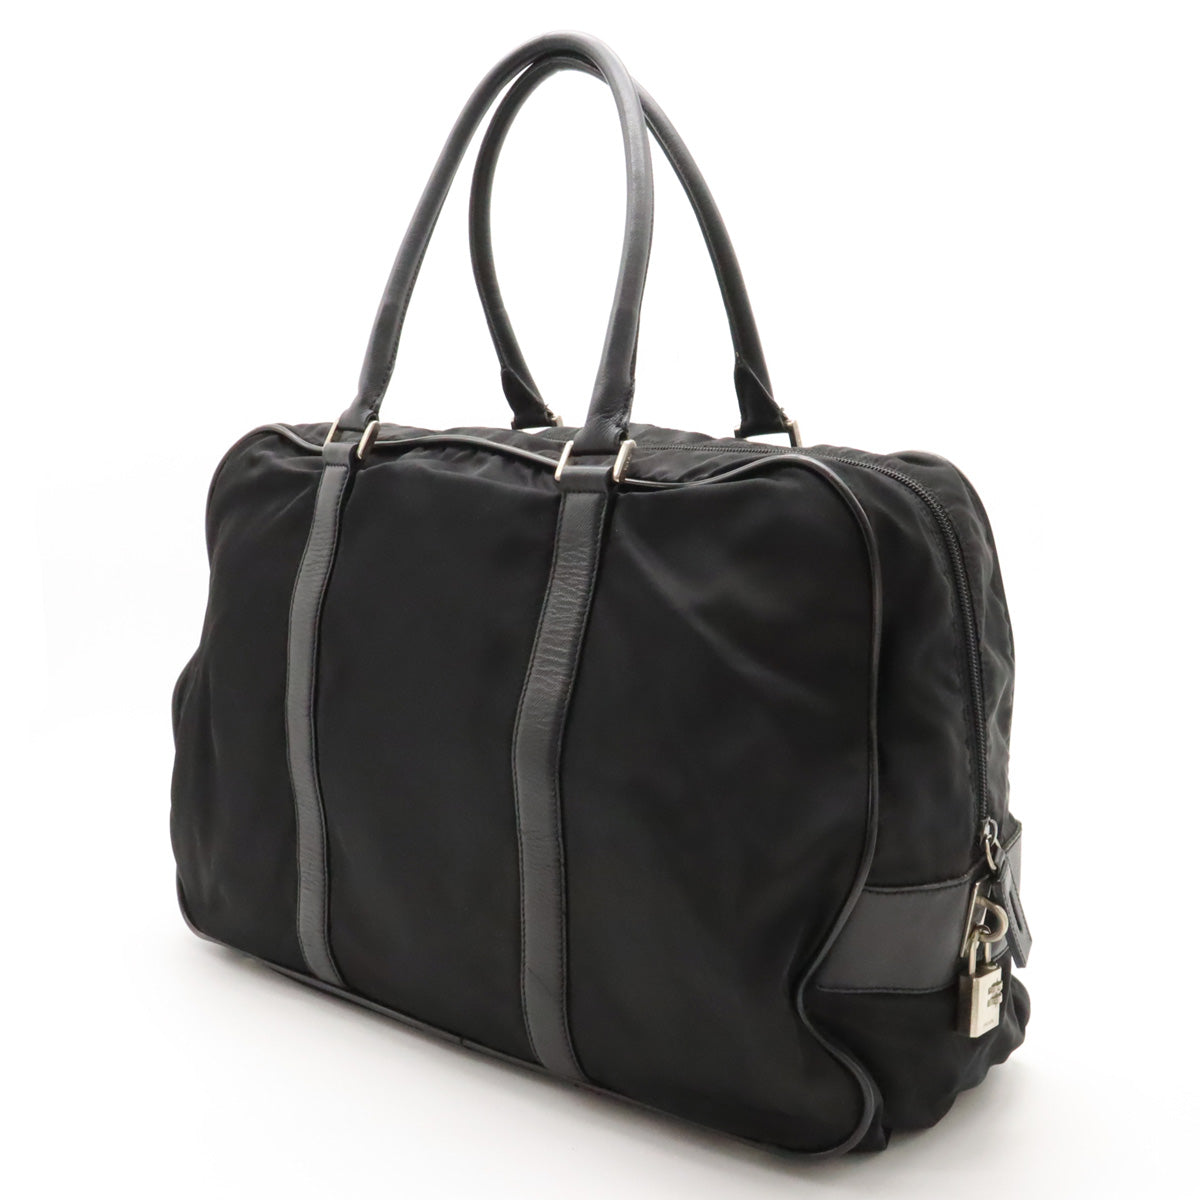 PRADA Prada Business Bag Briefcase Paper Bag Nylon Leather NERO Black Black Silver Gold  Domestic Boutique Purchases VS0069